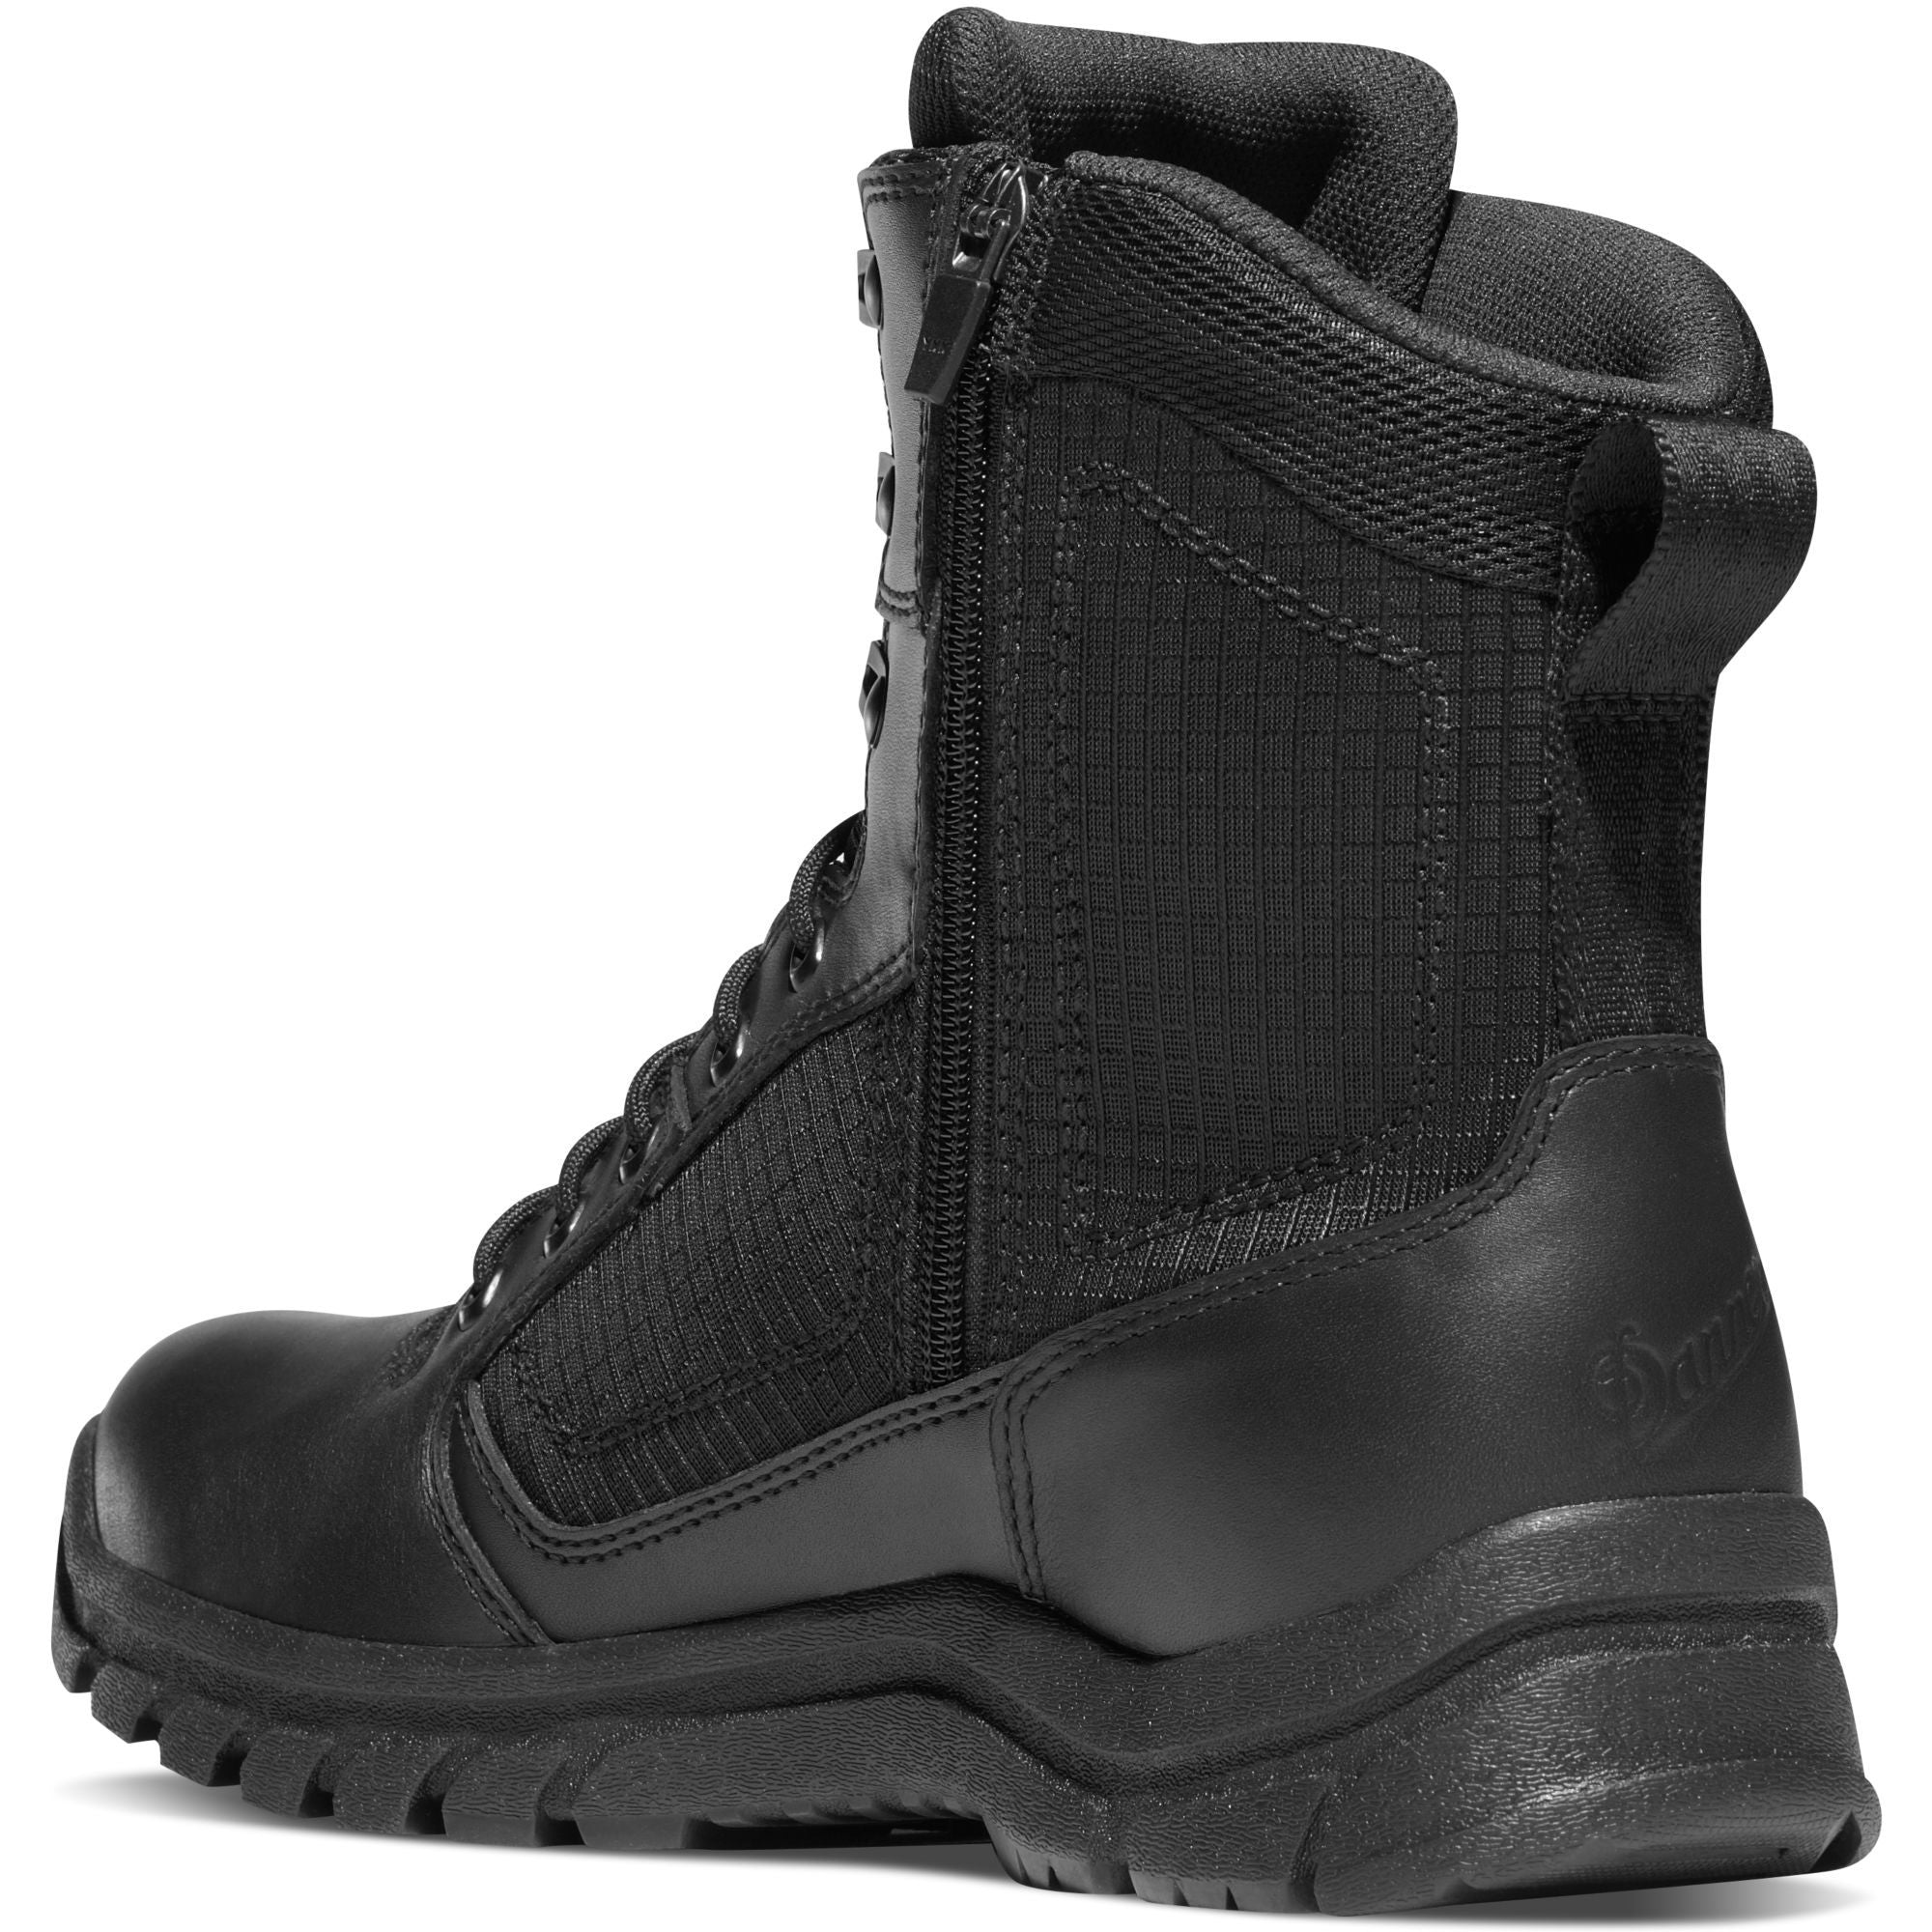 Danner Men's Lookout 8" Side Zip Waterproof Duty Boot - Black - 23824  - Overlook Boots